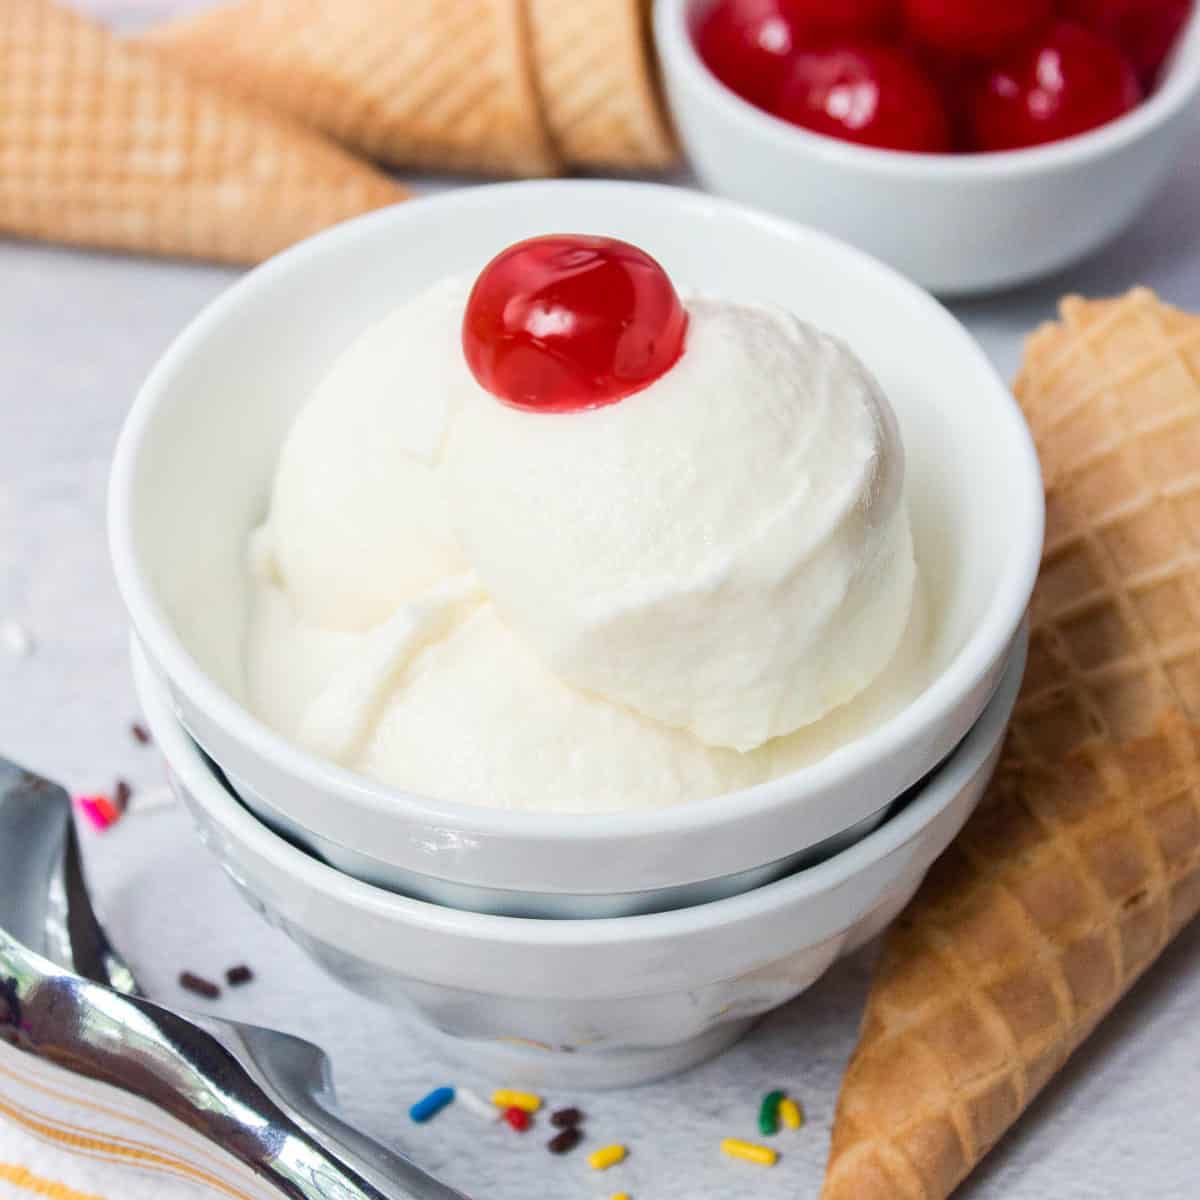 Ninja Creami Vanilla Ice Cream Recipe - Season & Thyme